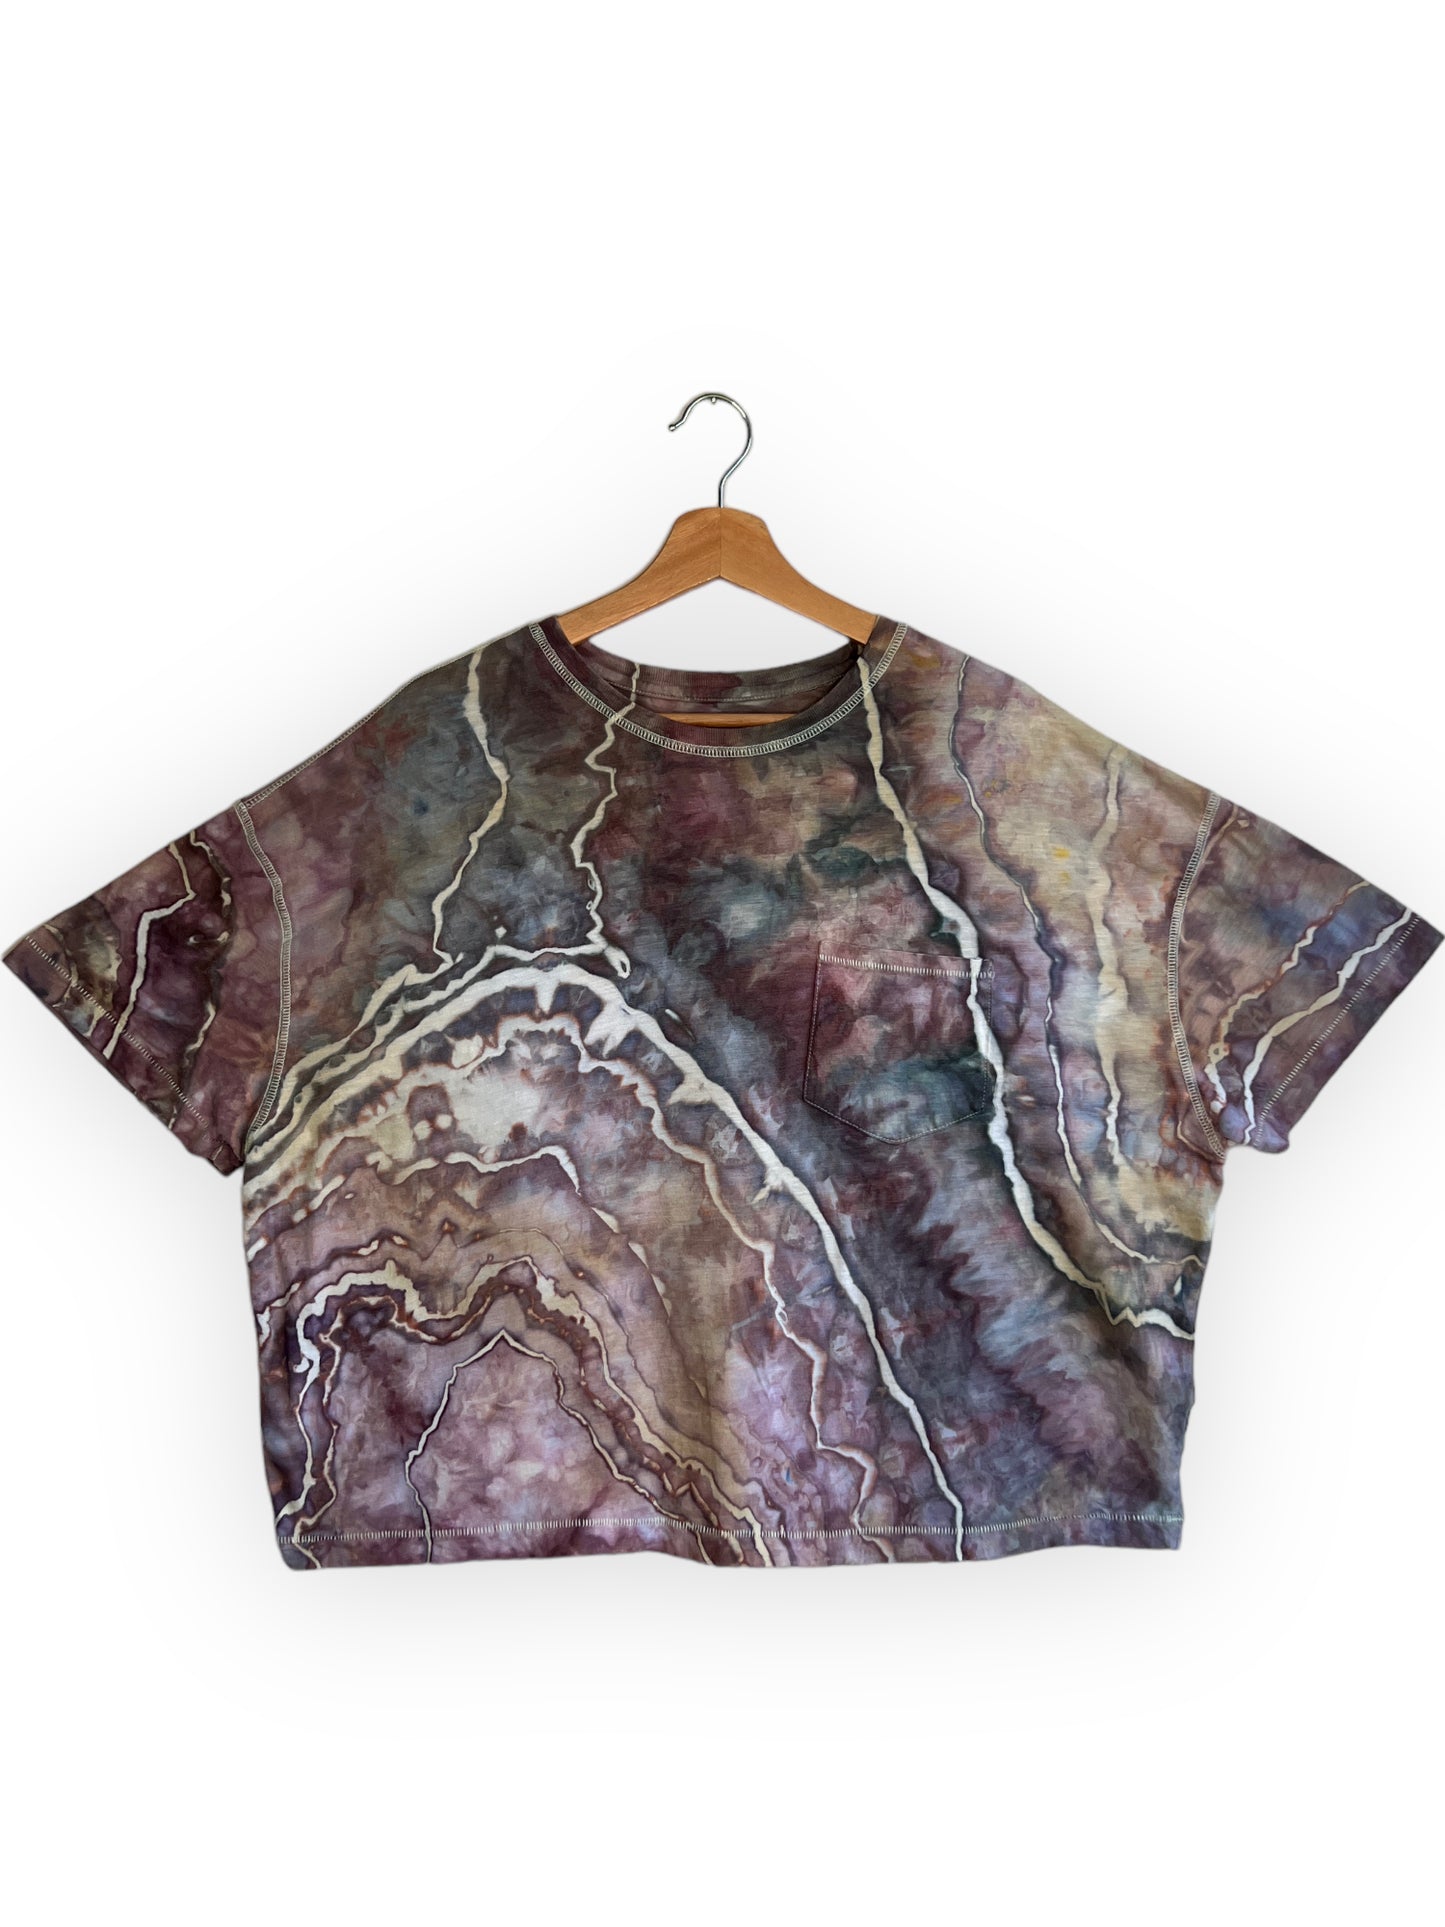 Purple Storm Cloud Pocket T-Shirt (XXL)